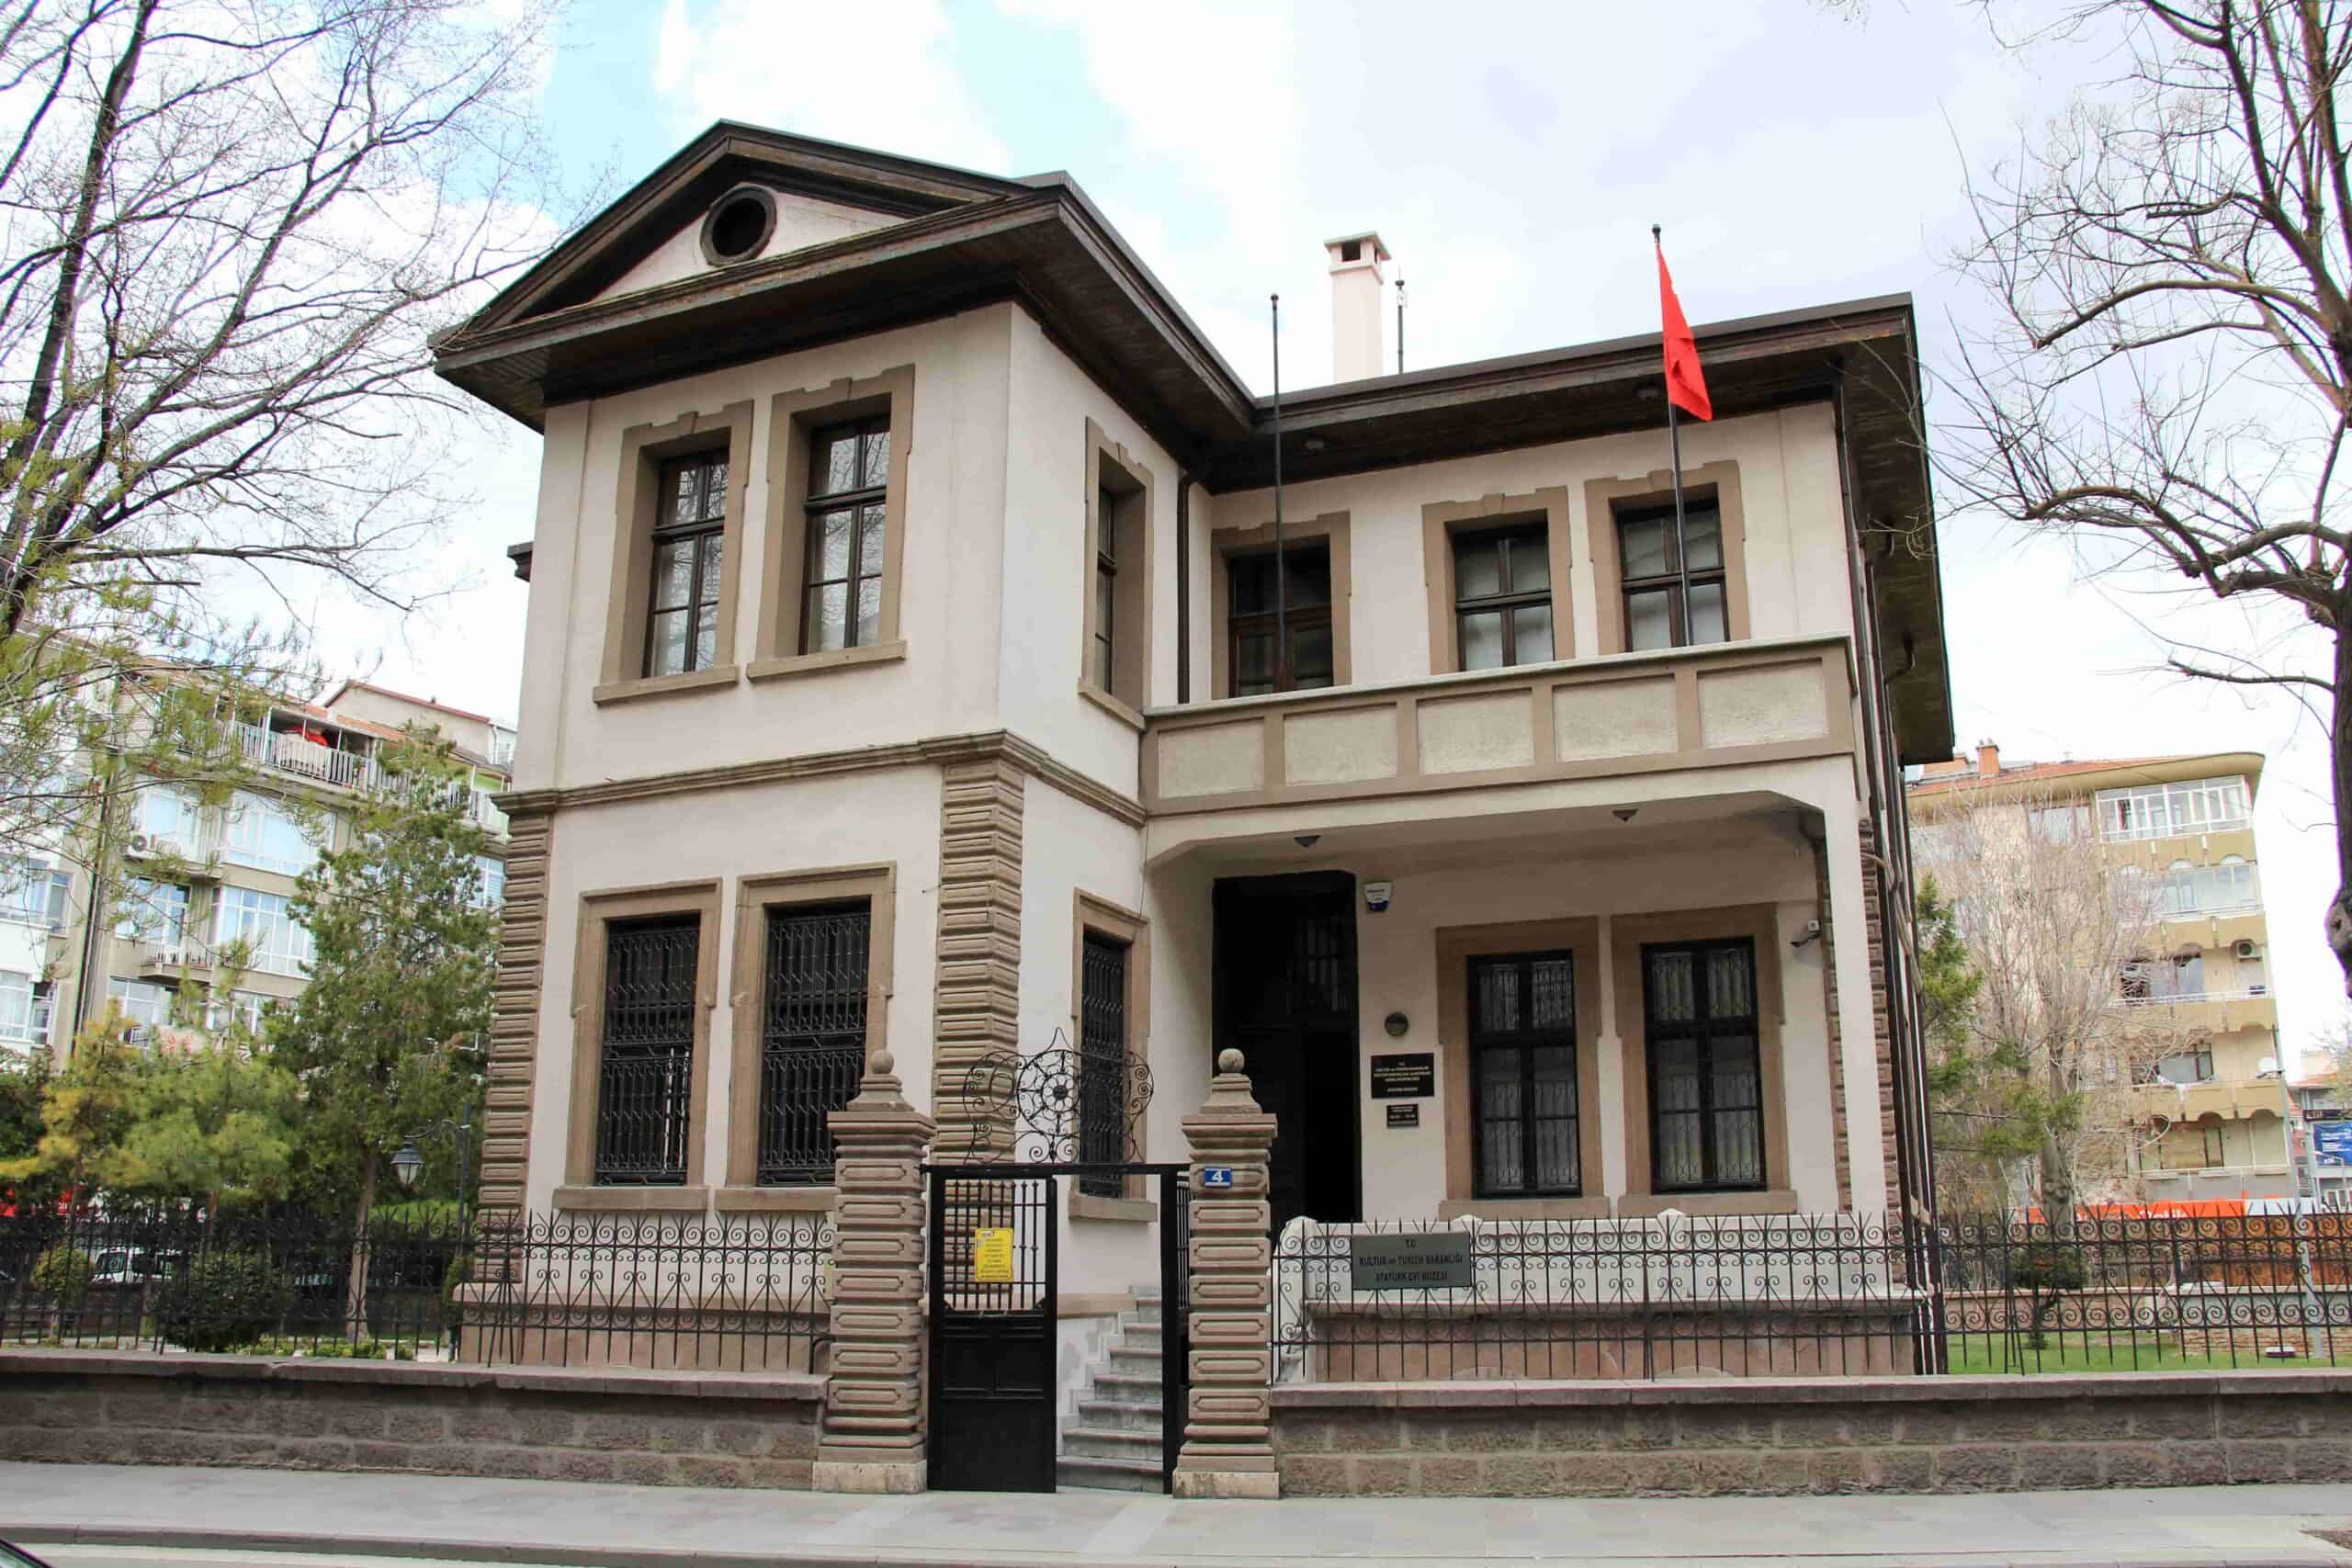 Konya Atatürk Evi Müzesi